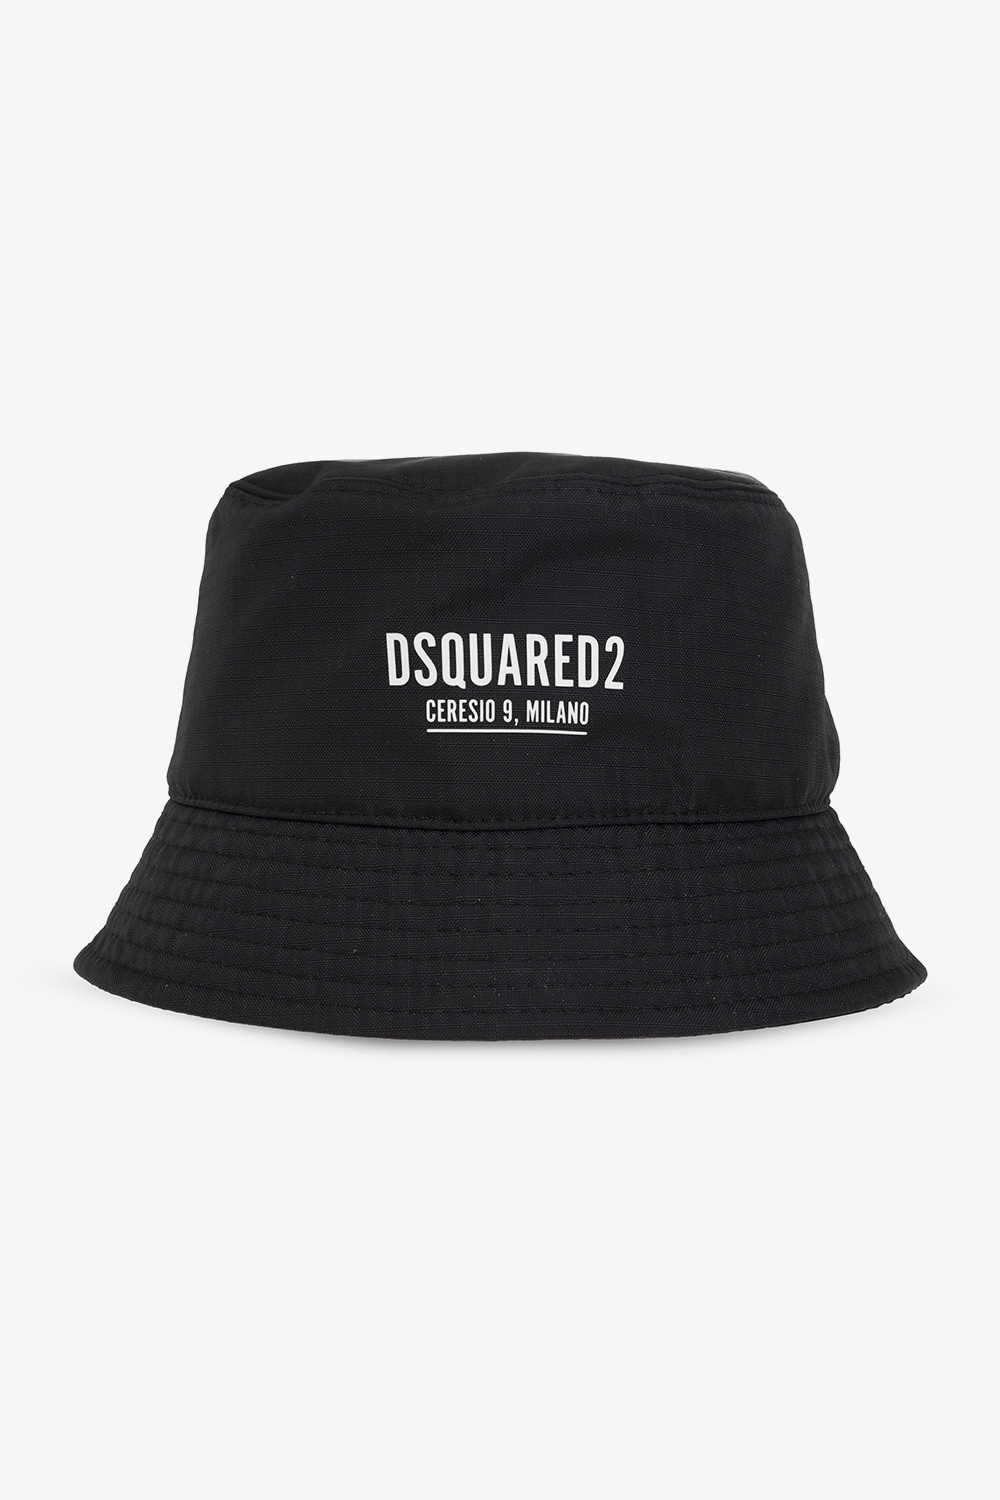 Dsquared2 flatspot og hardware polo cap black